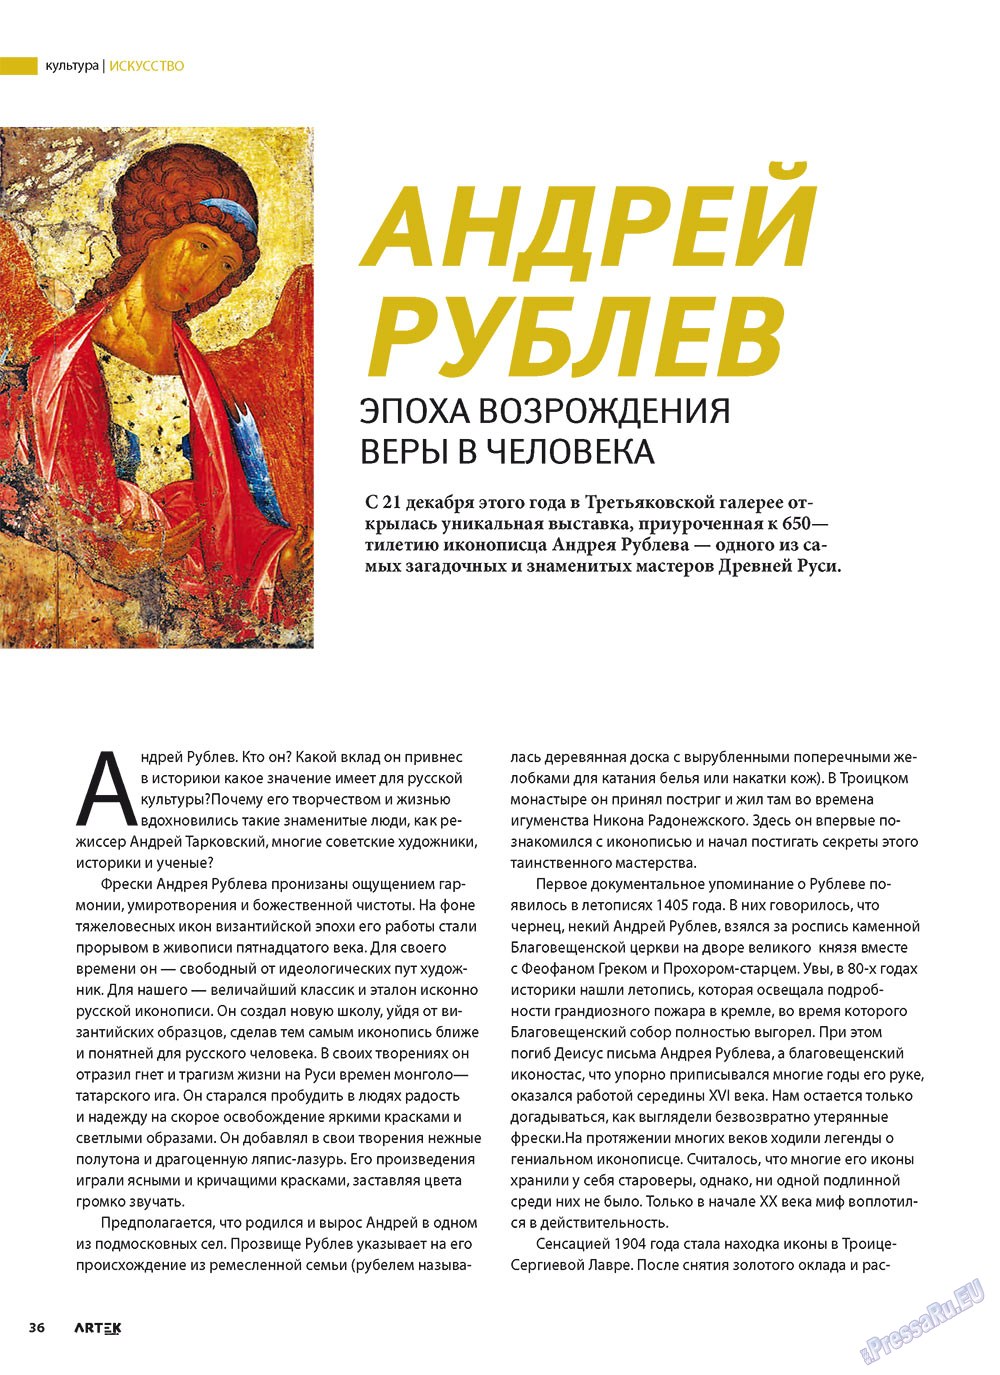 Артек, журнал. 2011 №1 стр.38